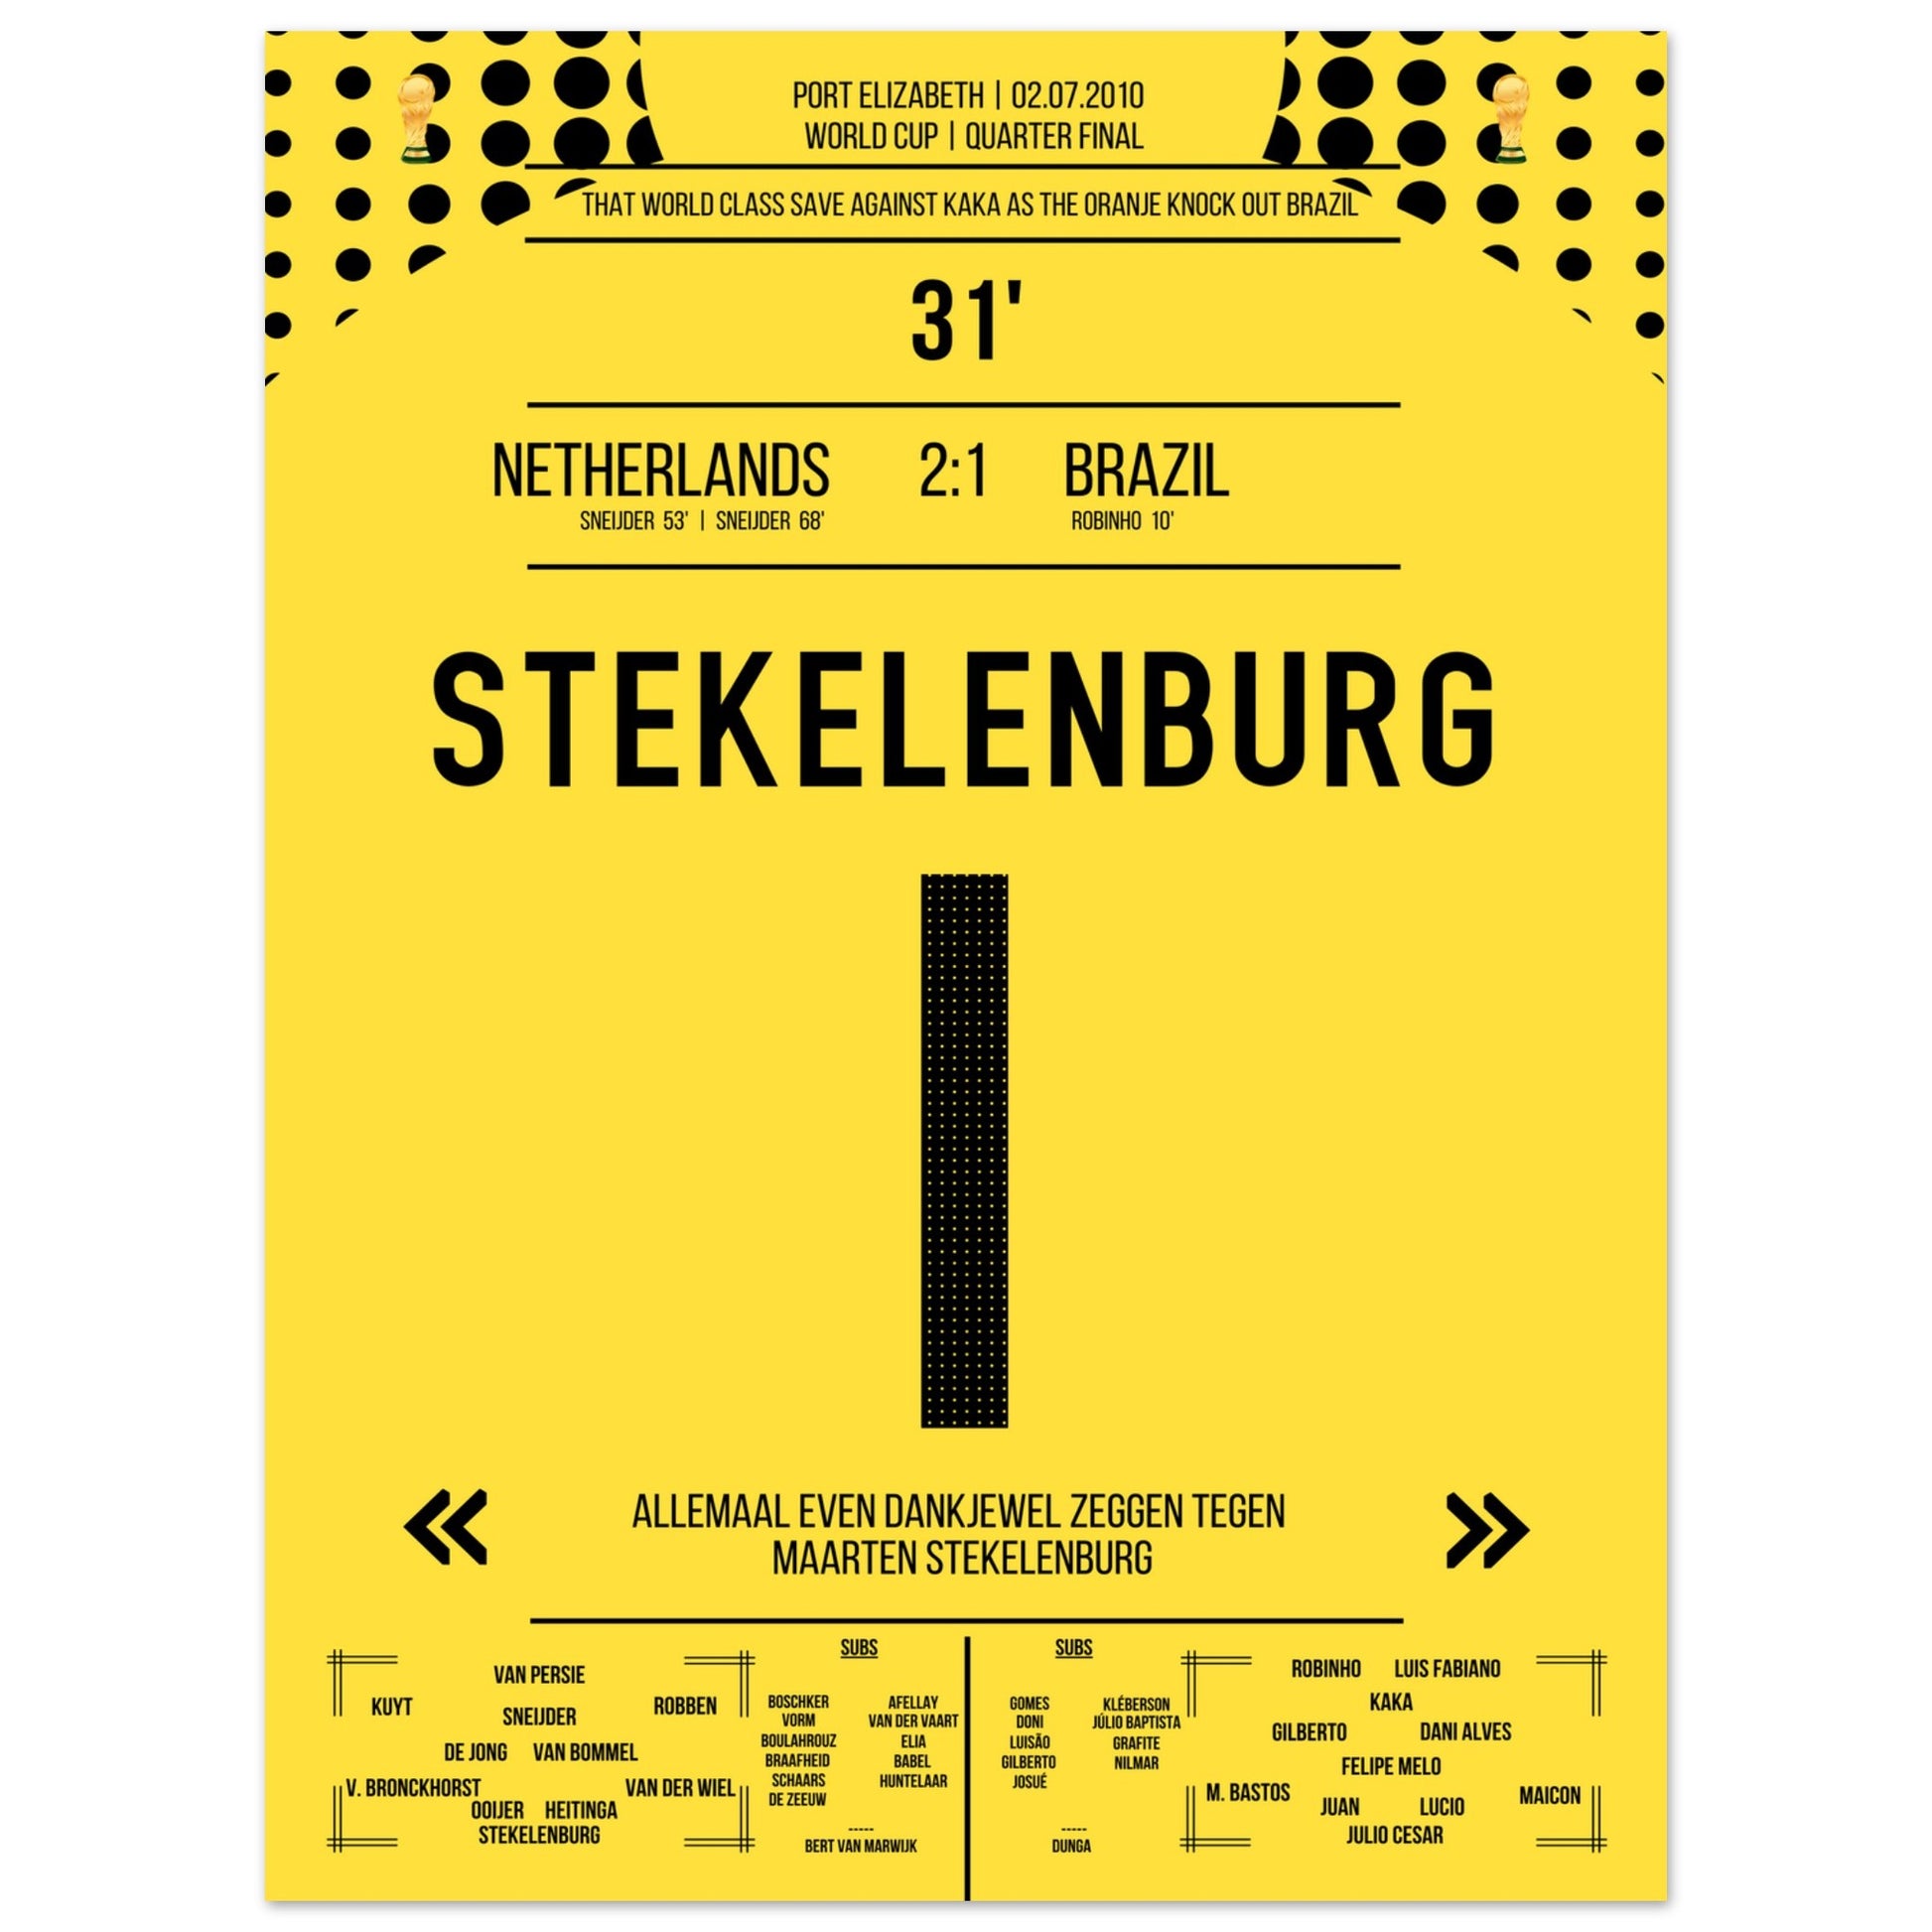 Stekelenburg's Weltklasse Aktion gegen Kaka bei der WM 2010 Kommentar-Version 45x60-cm-18x24-Ohne-Rahmen